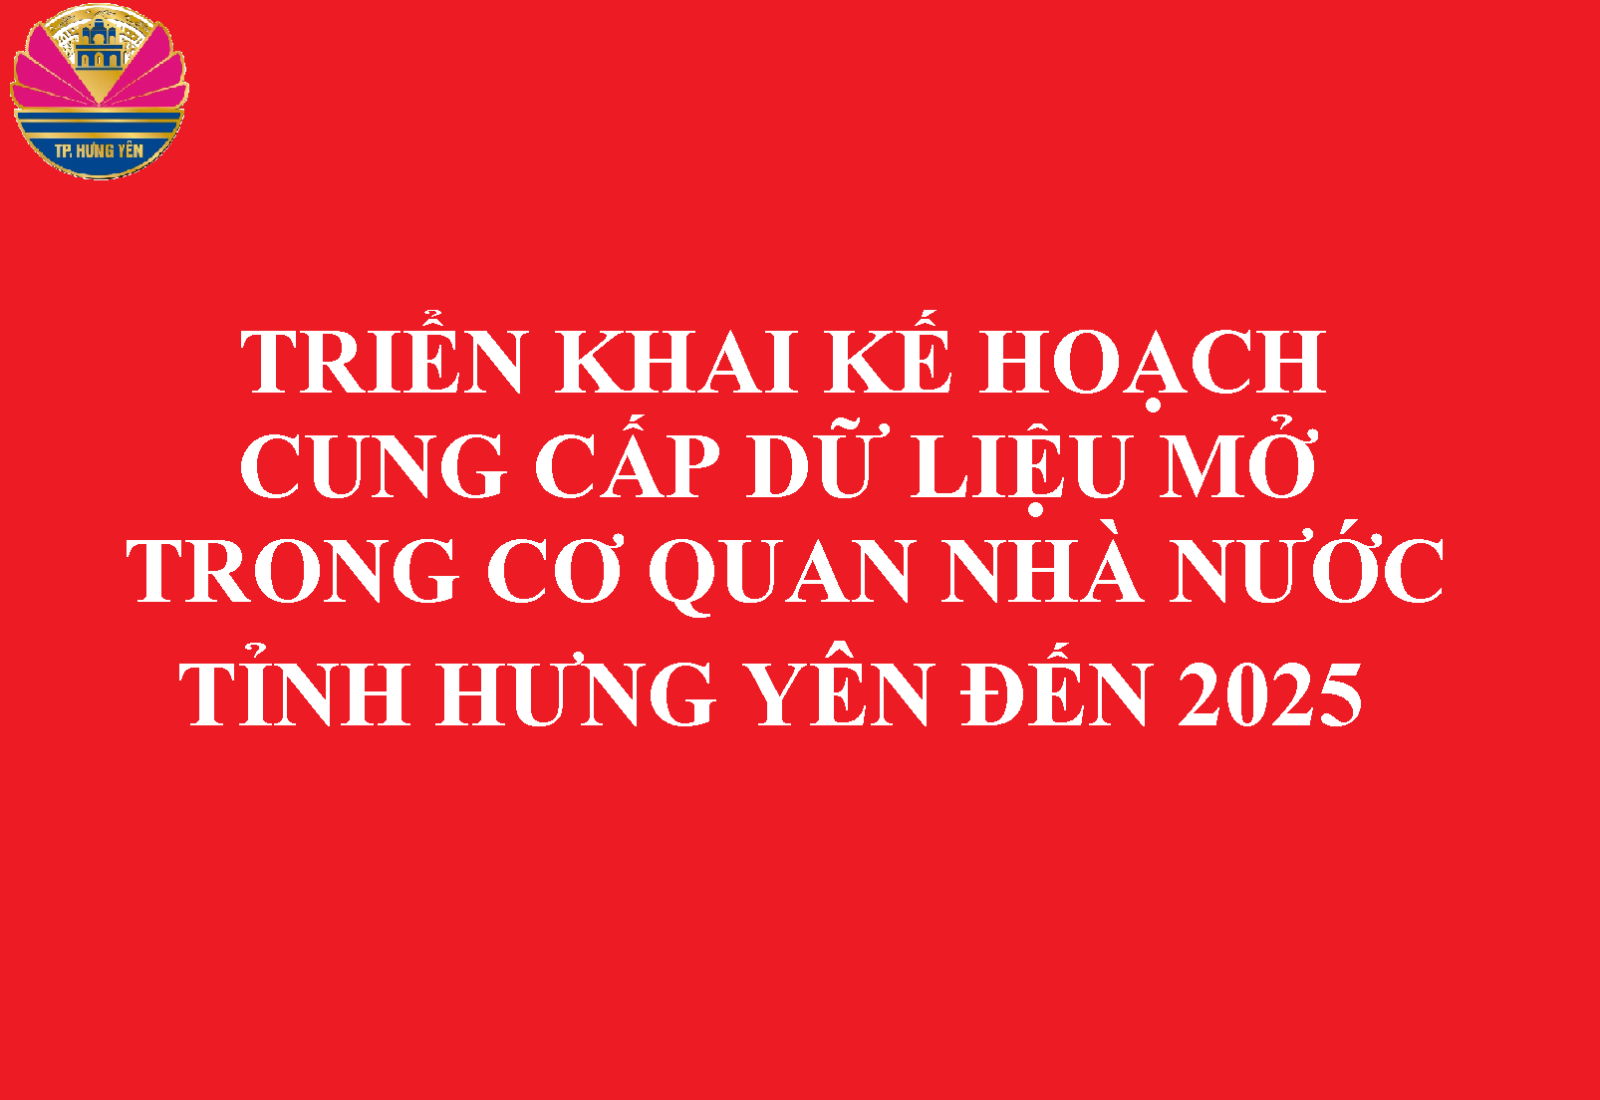 Triển khai Kế hoạch Cung cấp dữ liệu mở trong các cơ quan nhà nước tỉnh Hưng Yên đến năm 2025